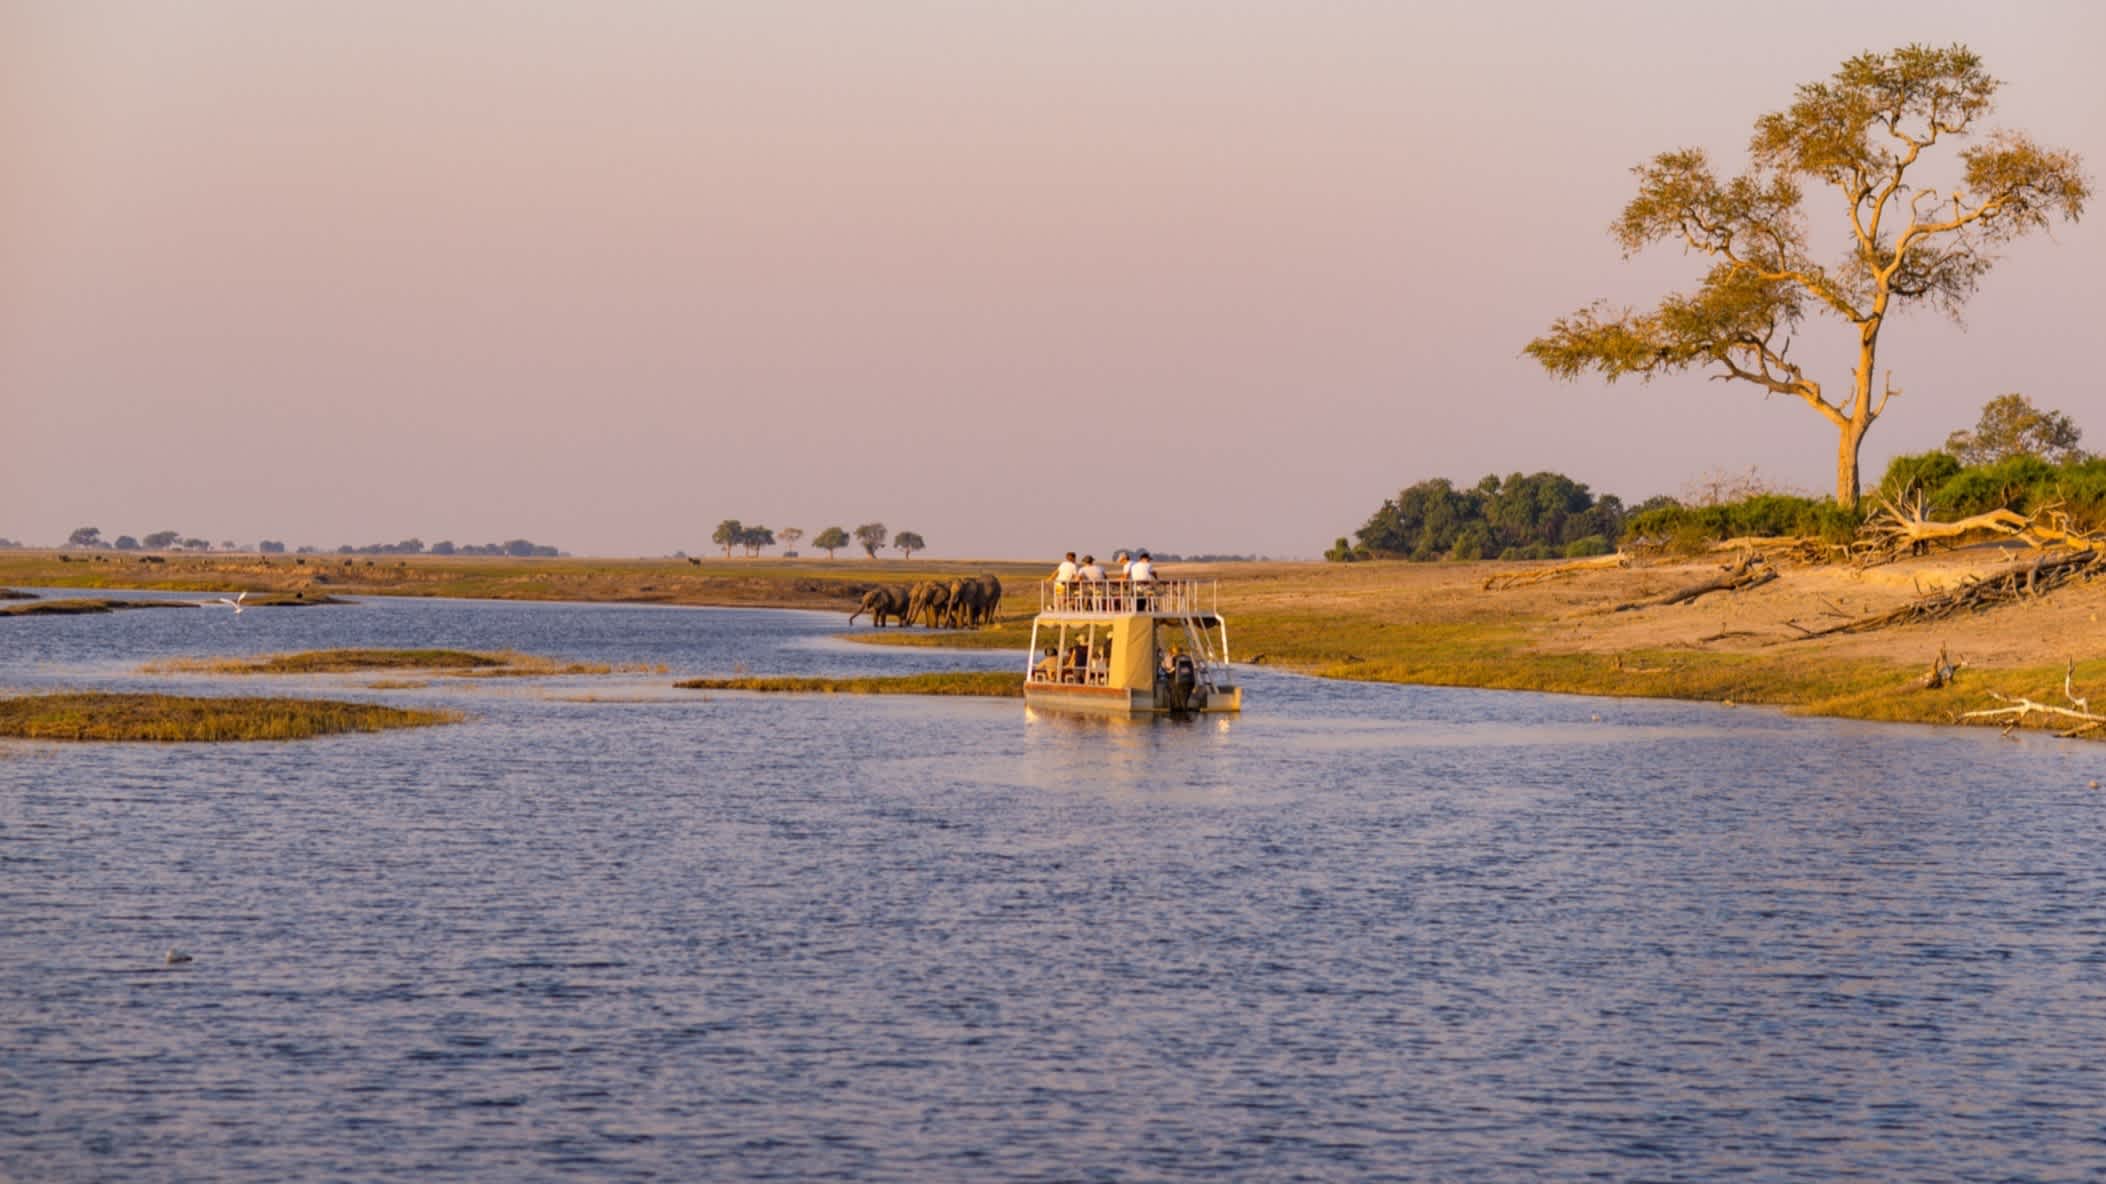 Der bezaubernde Caprivistreifen mit einem Safari-Auto im Wasser im Norden Namibias bei Sonnenuntergangsstimmung.